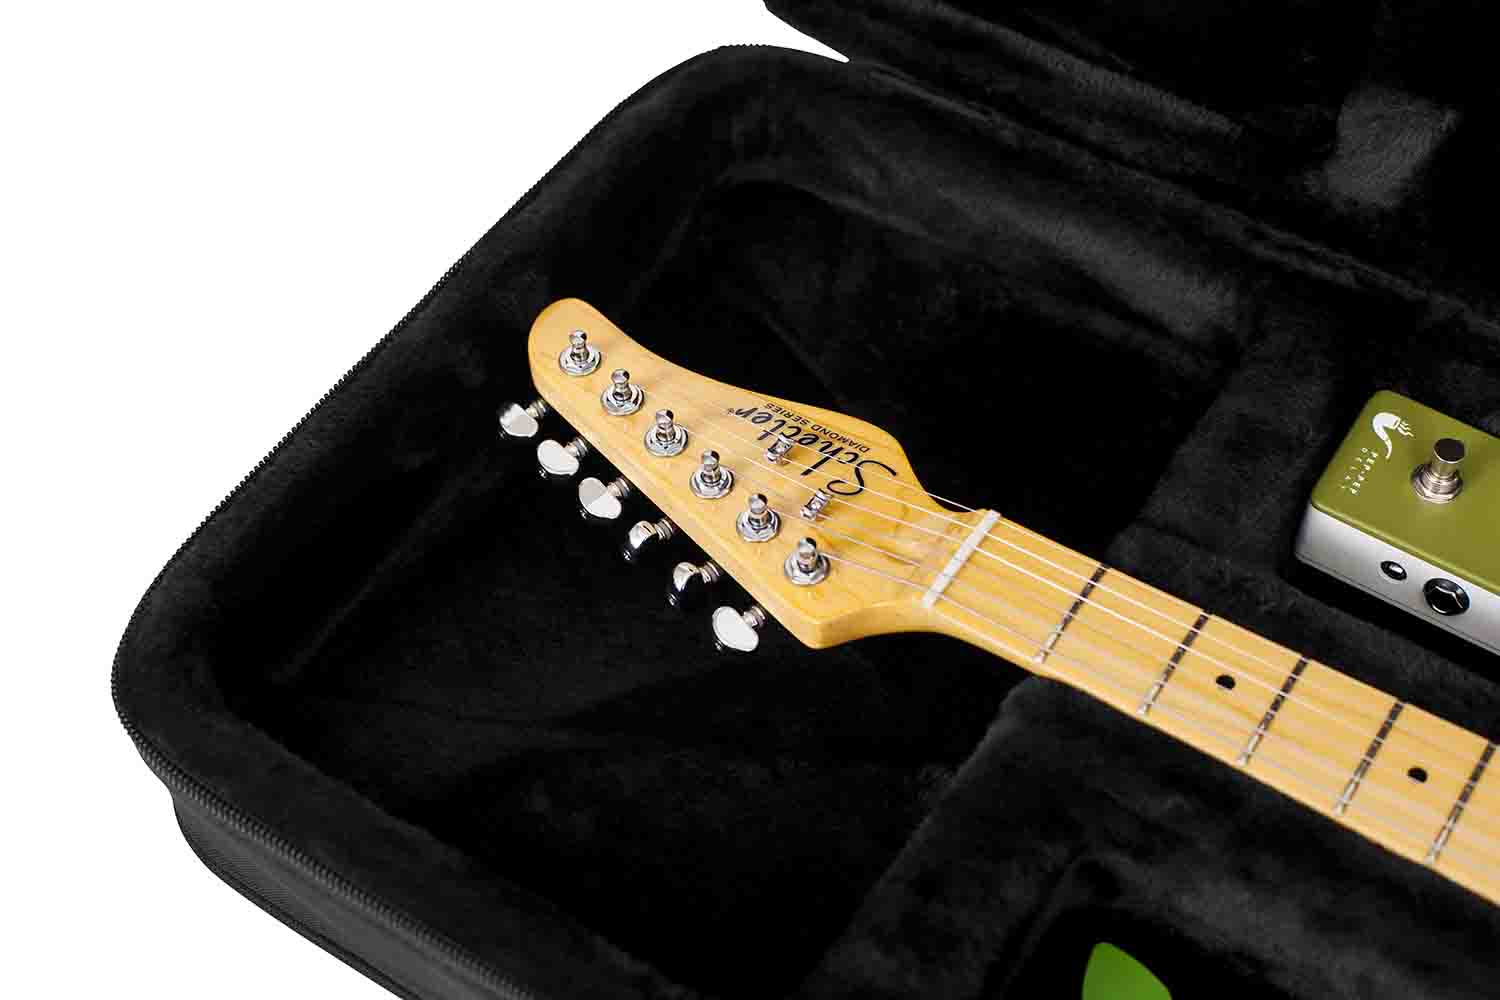 Gator Cases GL-ELECTRIC Rigid EPS Polyfoam Lightweight Guitar Case for Electric Guitars Gator Cases